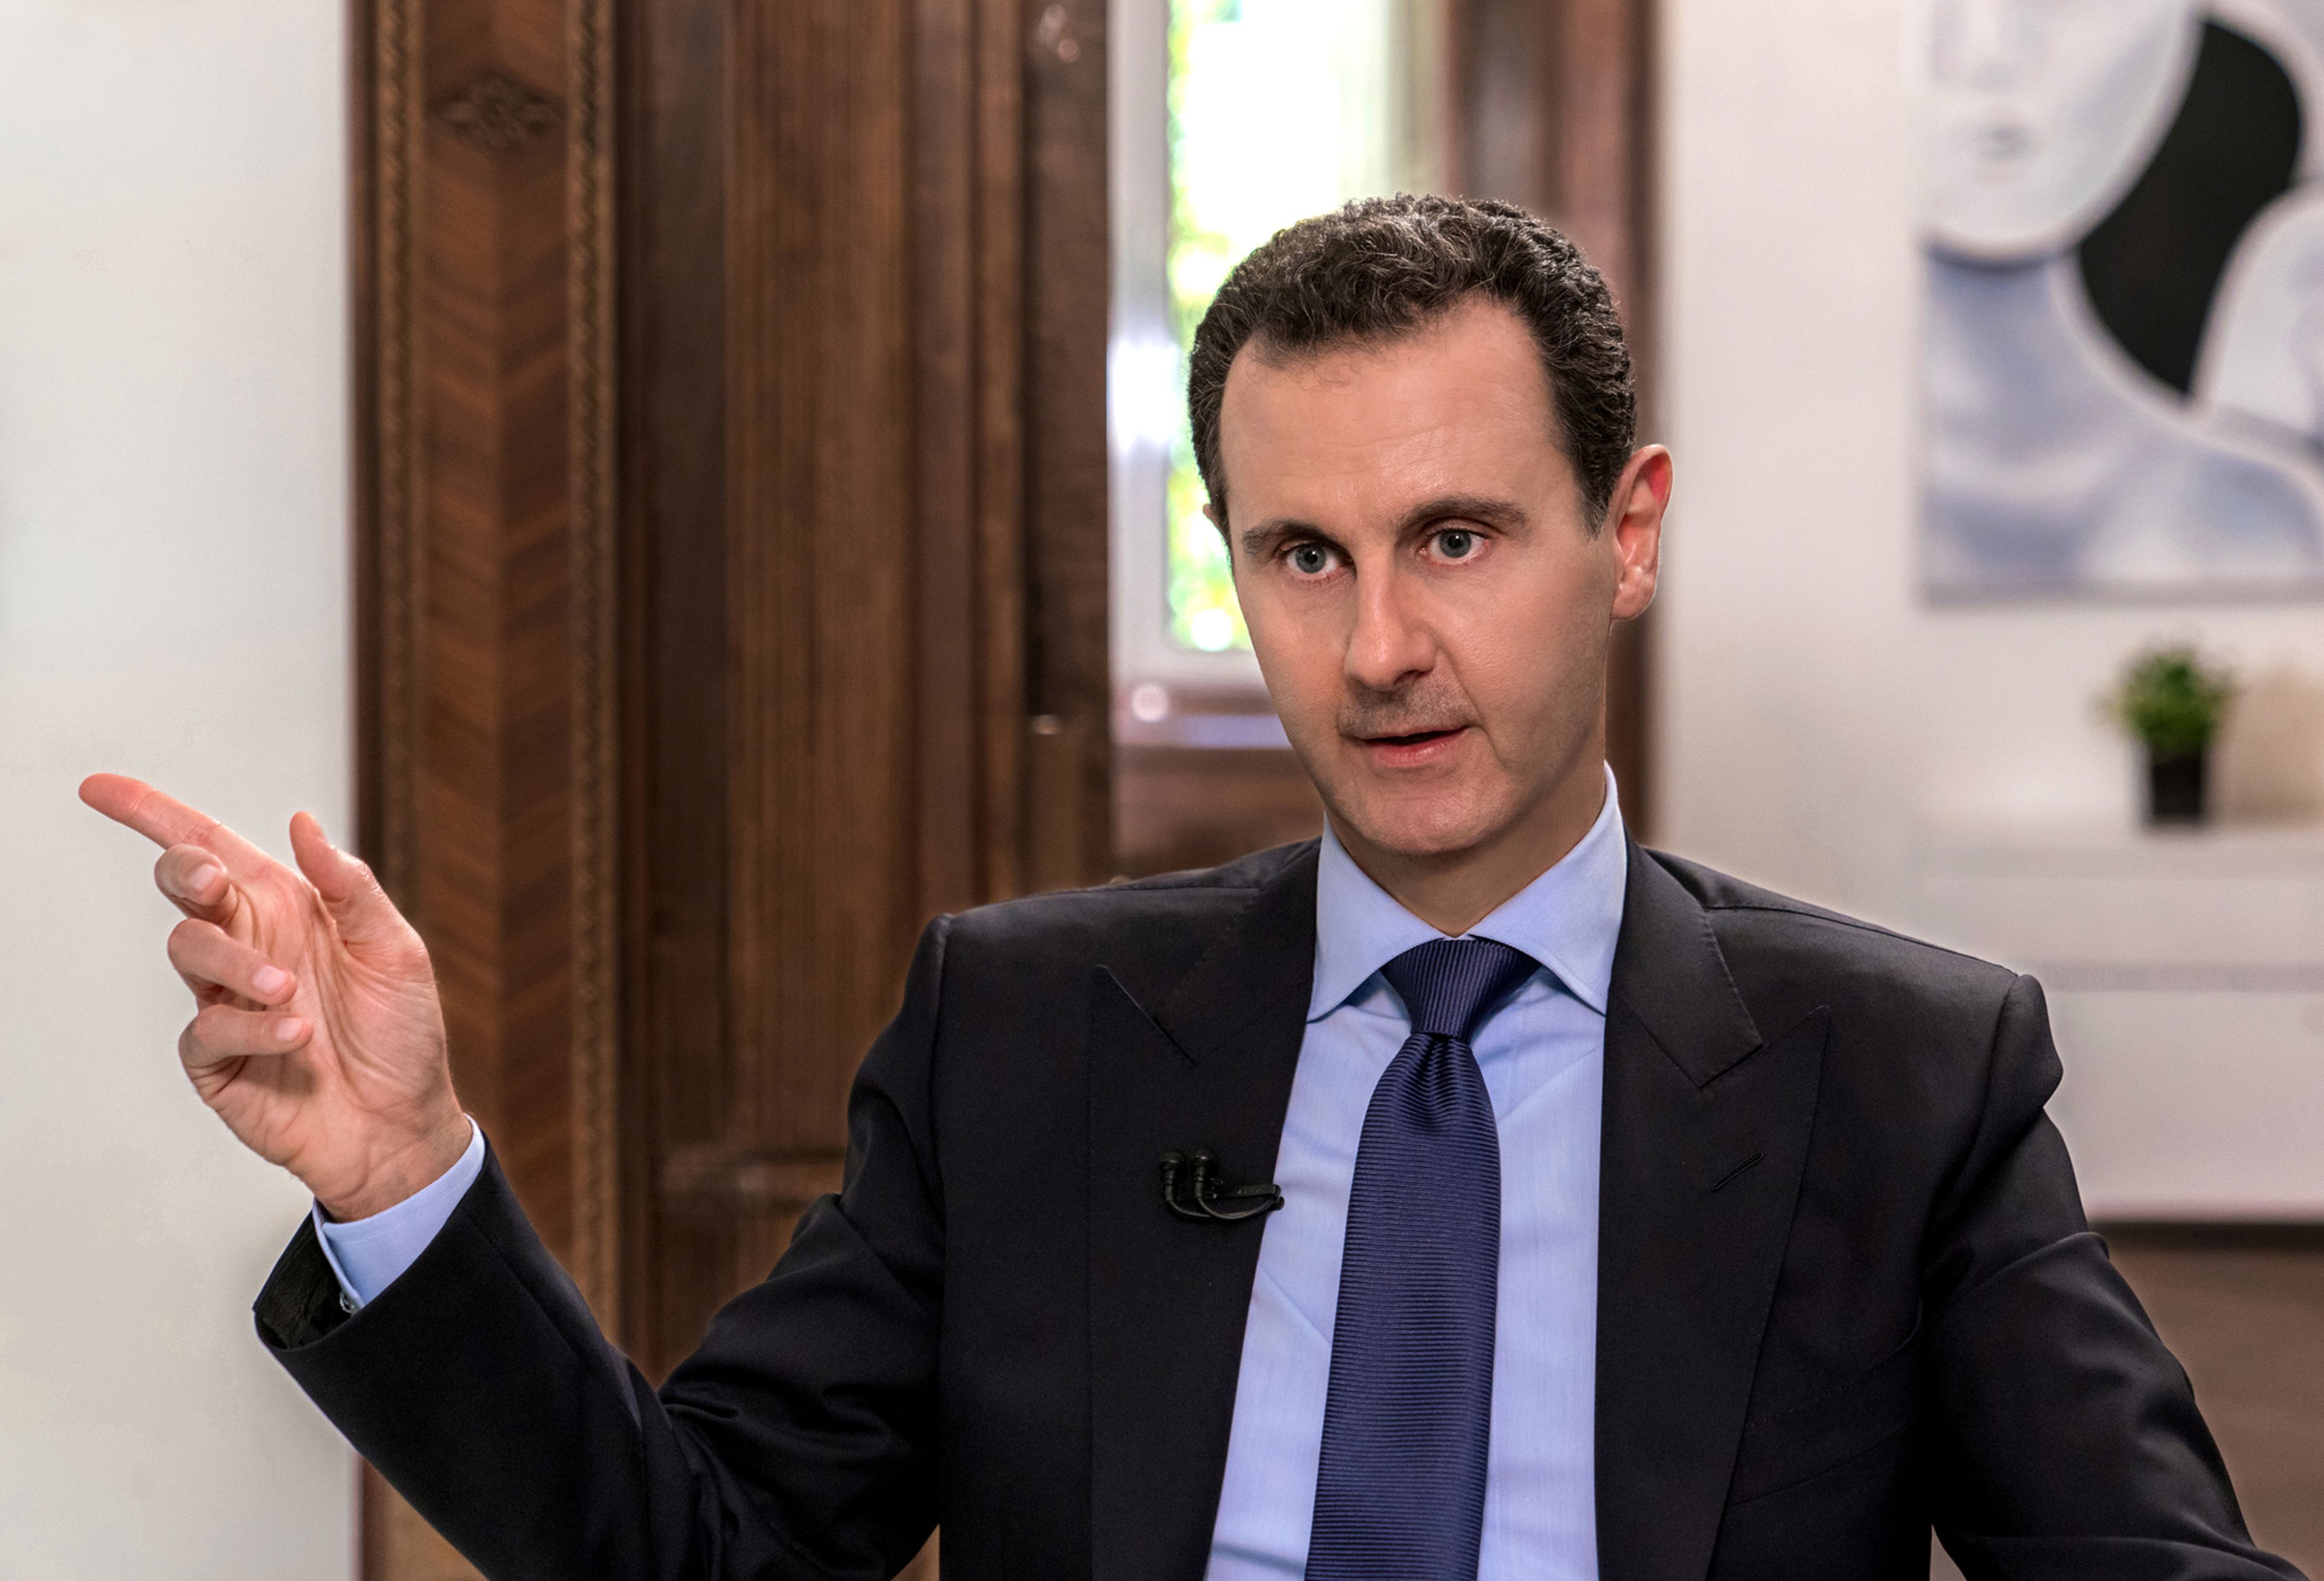 El presidente sirio, Bashar al-Assad